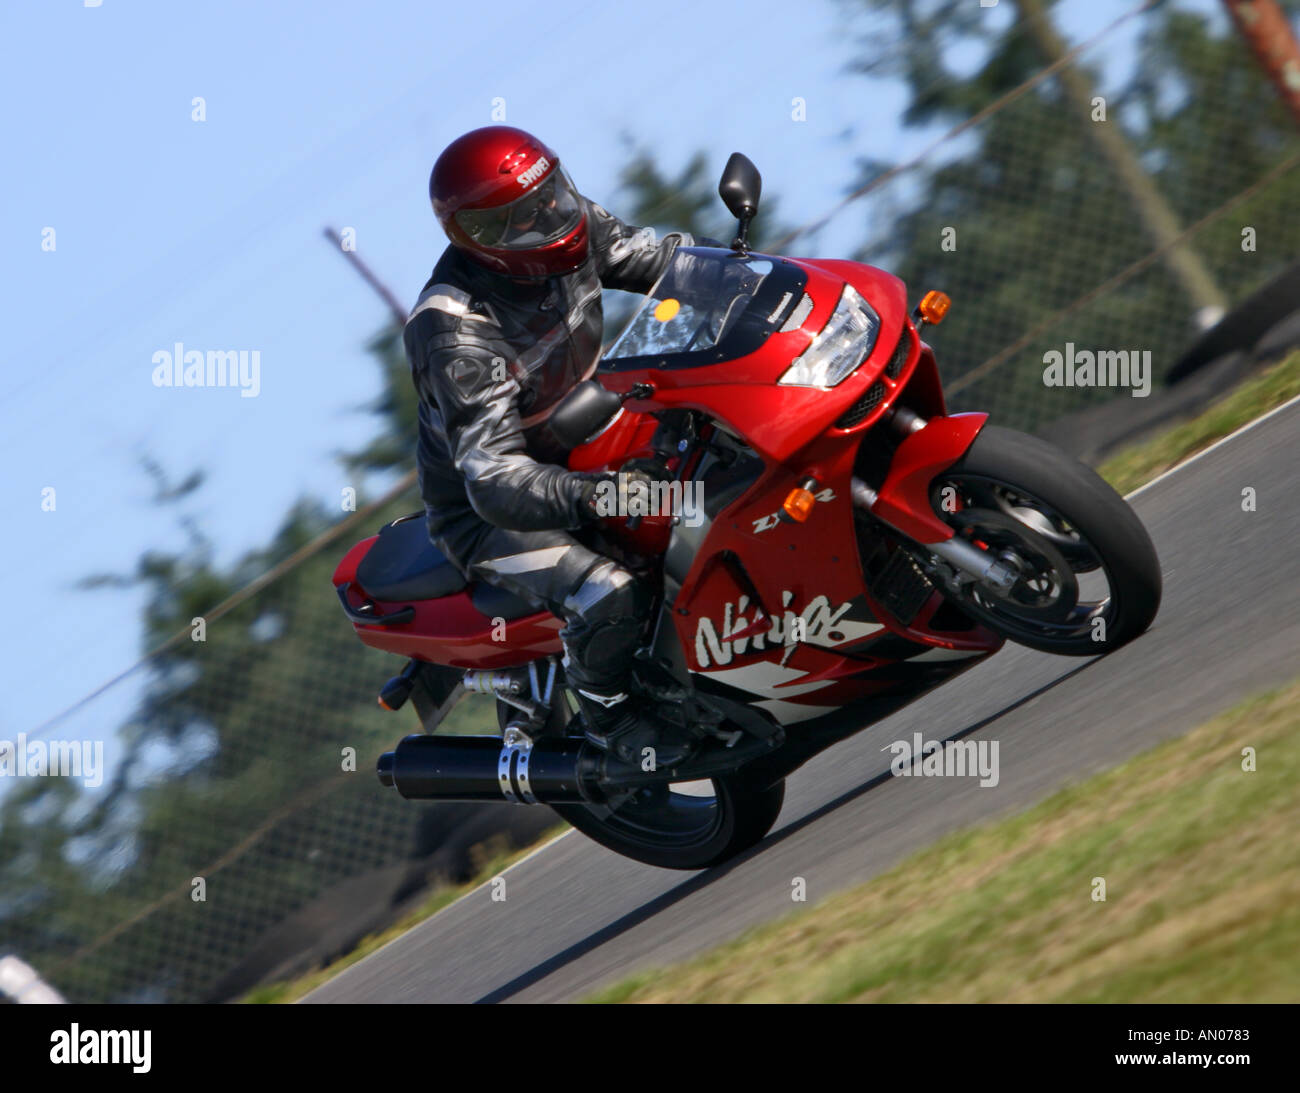 Kawasaki ninja fotografías e imágenes de alta resolución - Página 3 - Alamy